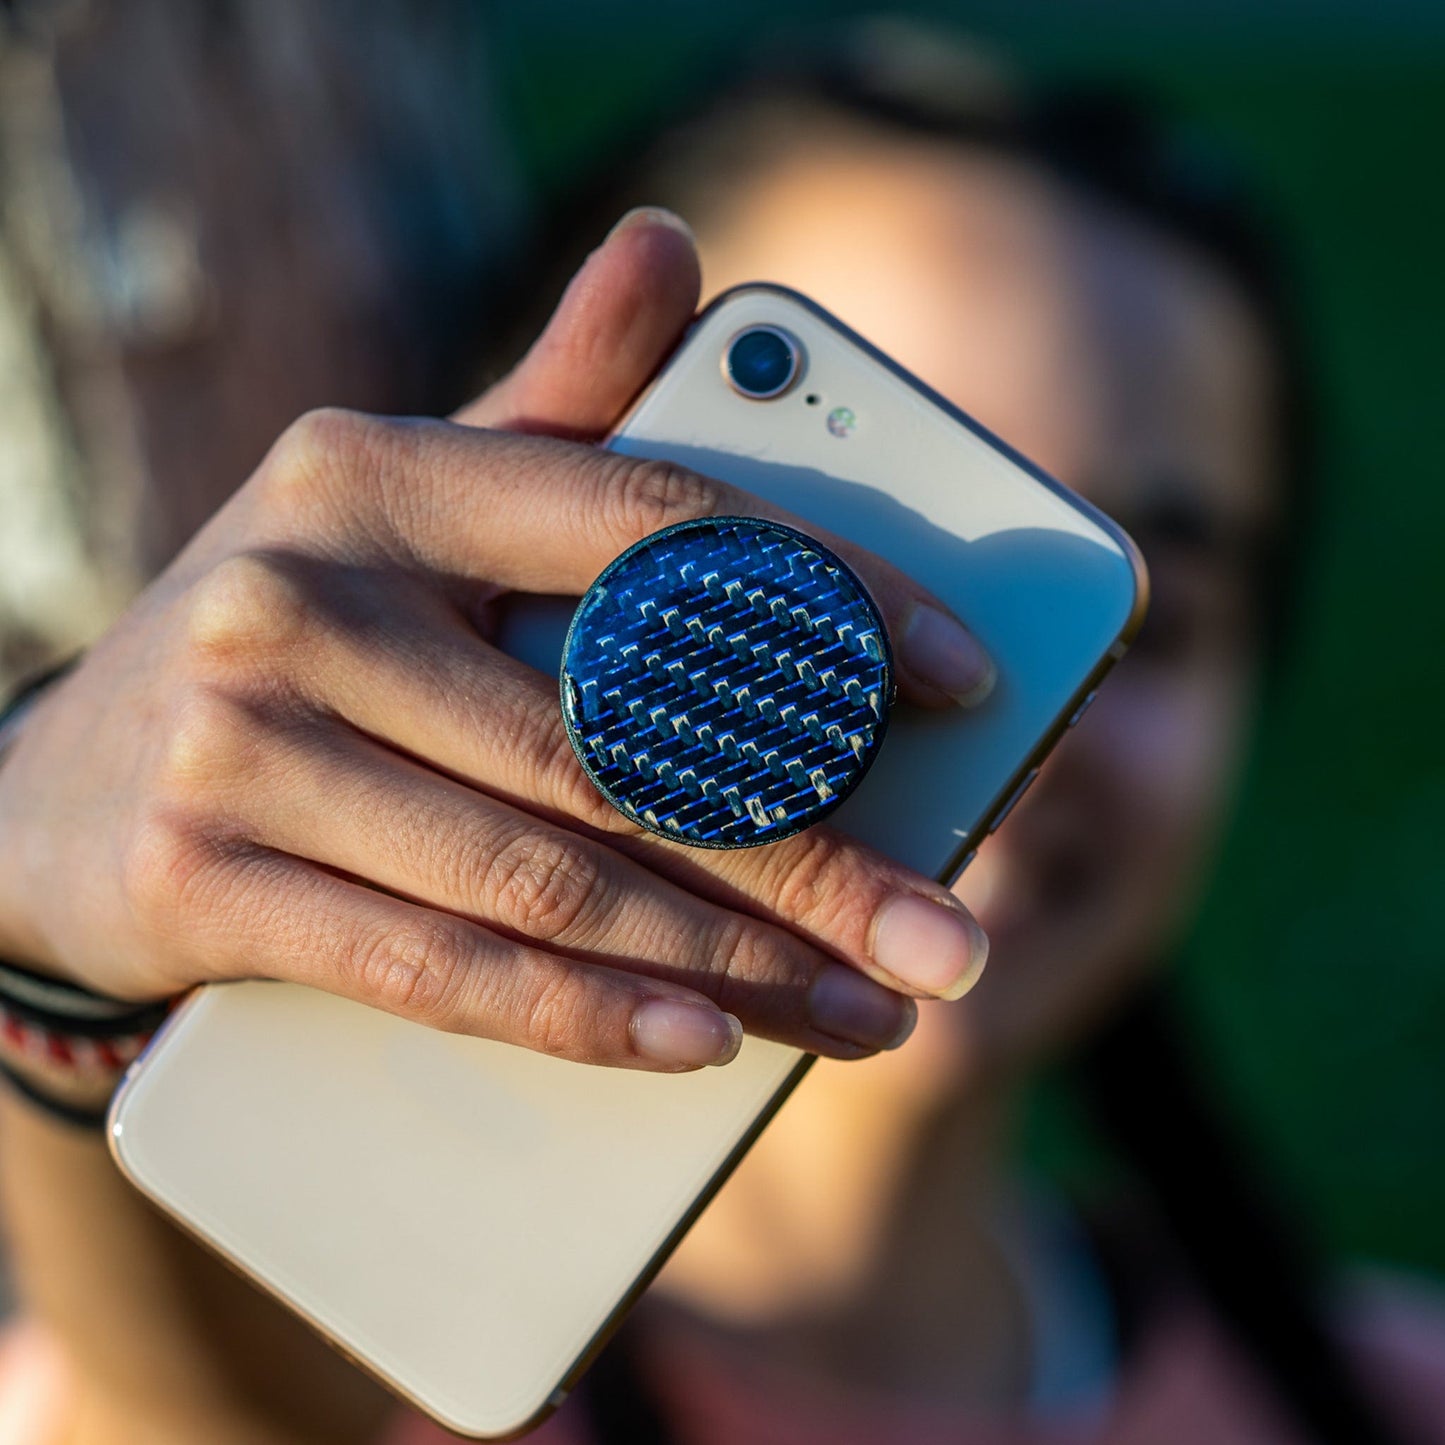 hvordan opfindelse Ud Blue Reflective Carbon Fiber Phone Grip – Rebel Carbon Fiber